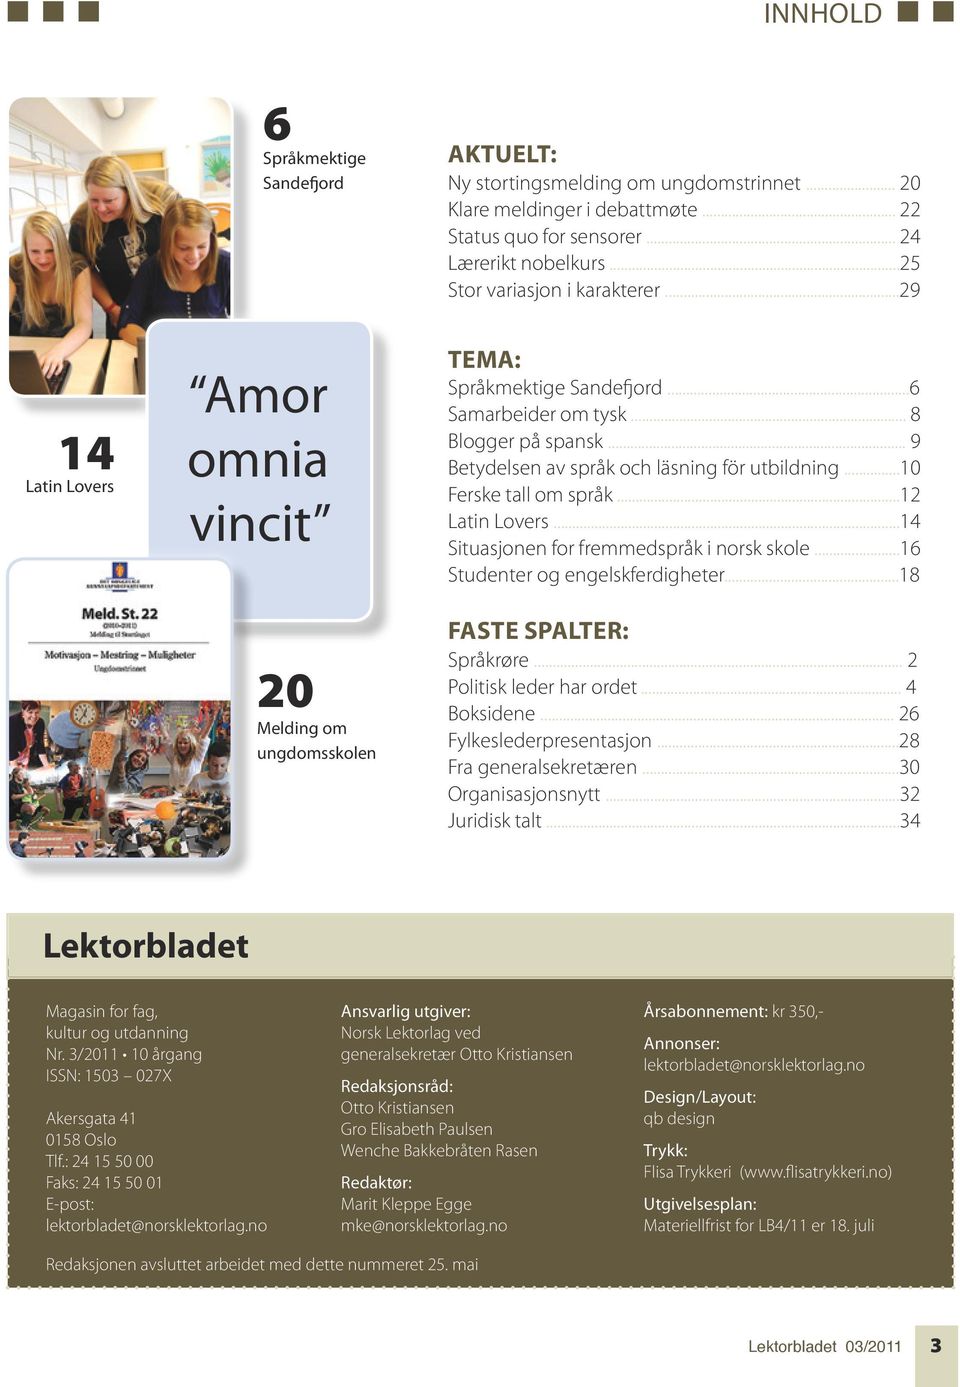 .. 9 Betydelsen av språk och läsning för utbildning...10 Ferske tall om språk...12 Latin Lovers...14 Situasjonen for fremmedspråk i norsk skole...16 Studenter og engelskferdigheter.